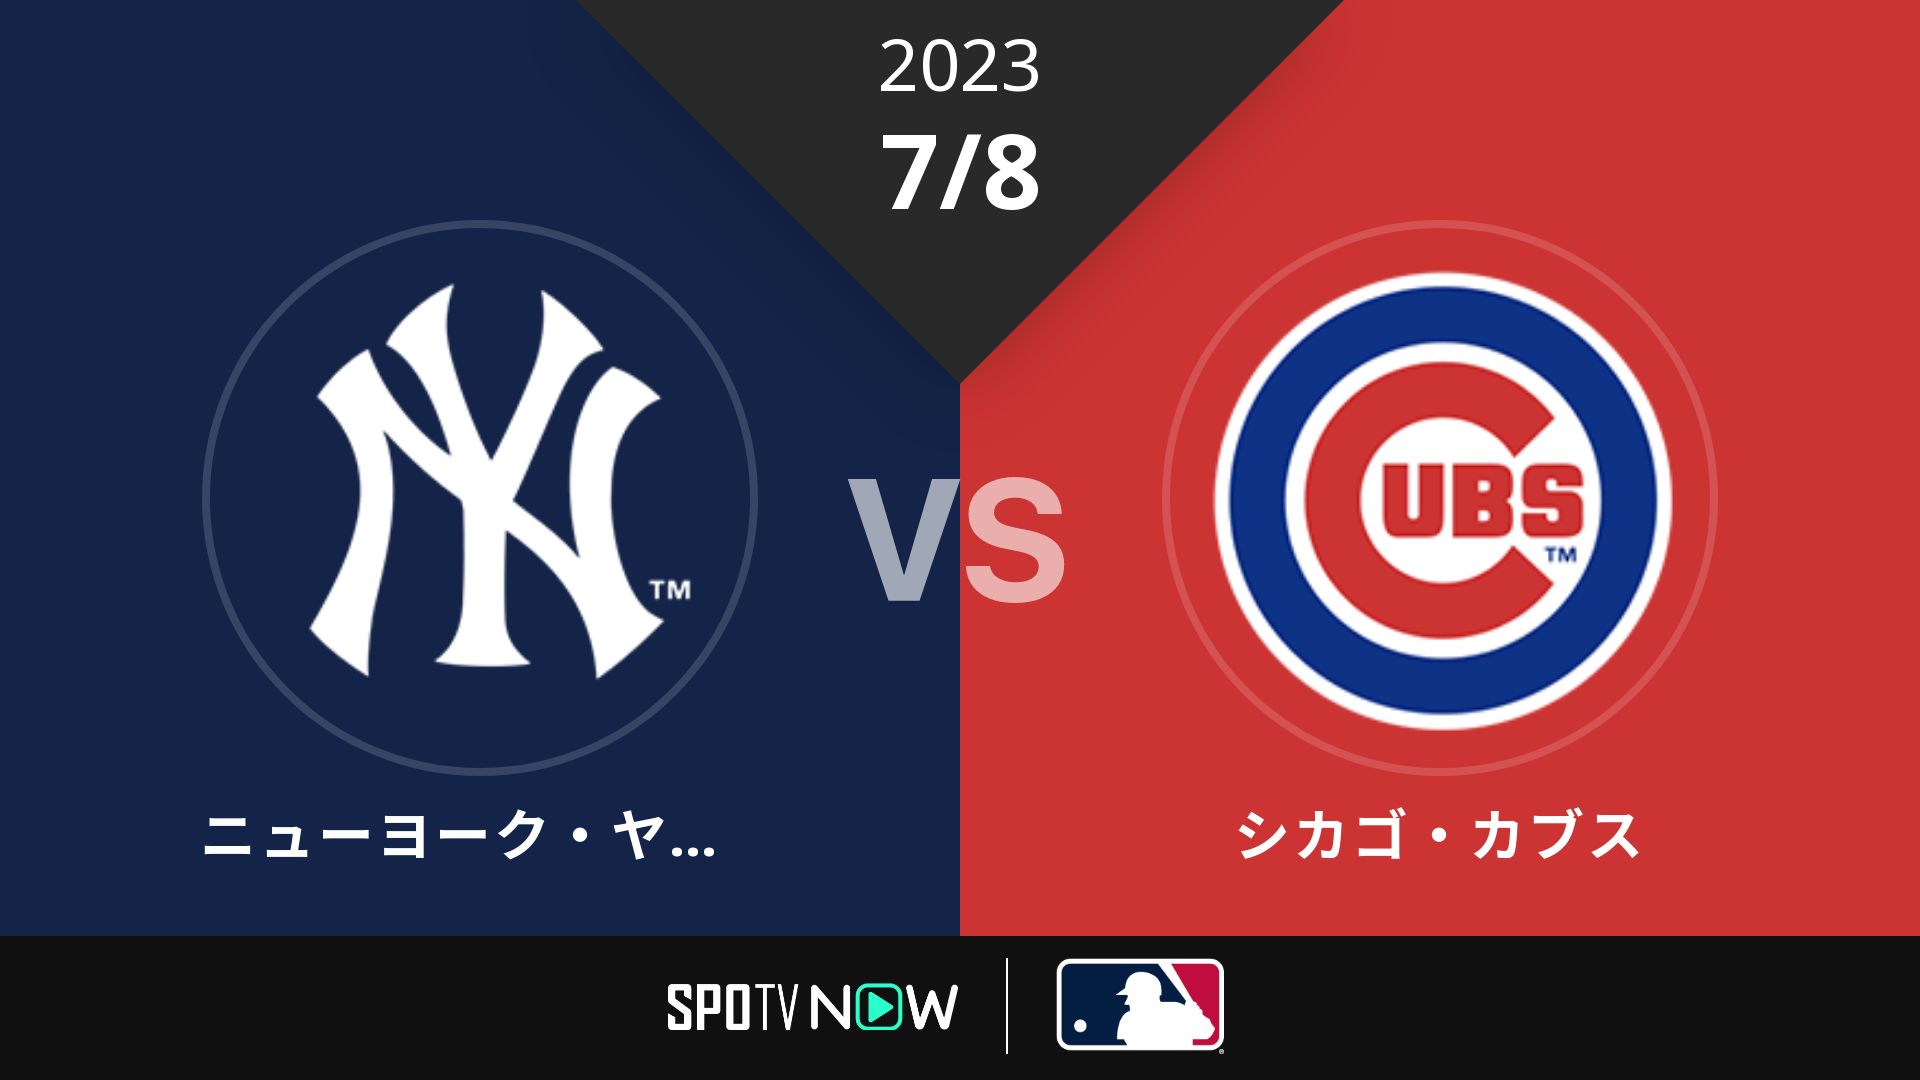 2023/7/8 ヤンキース vs カブス [MLB]